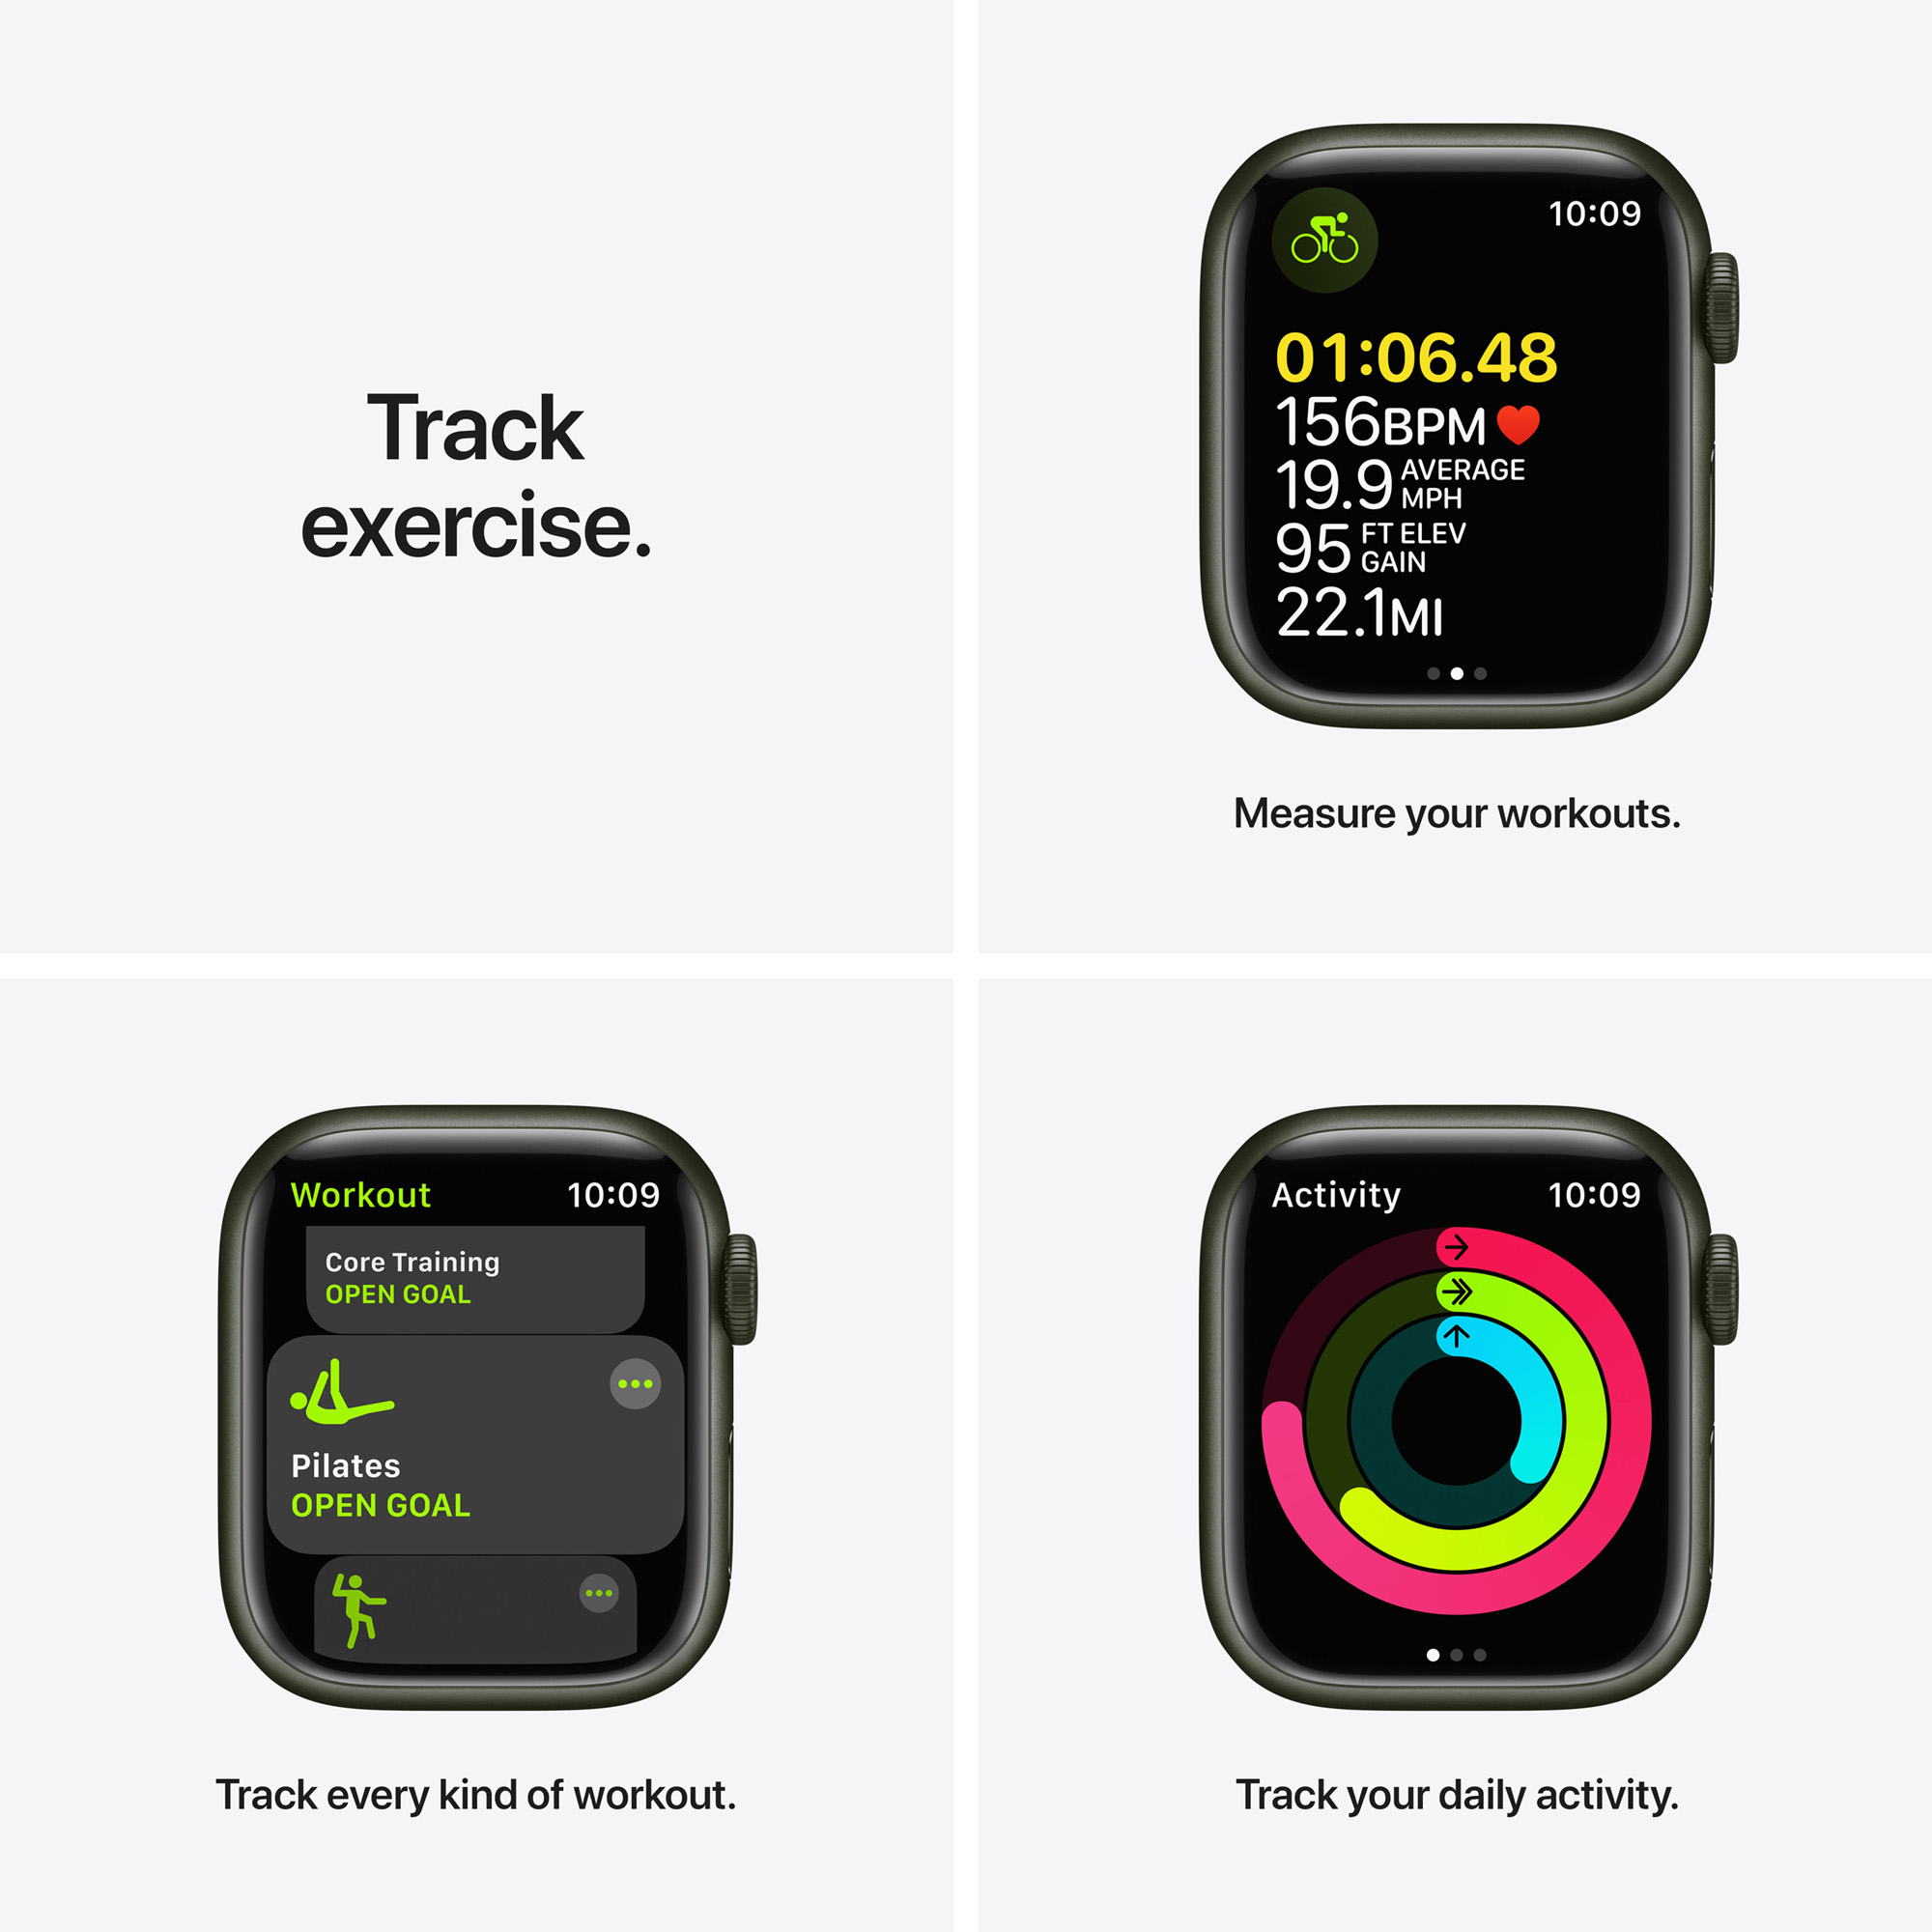 Apple Watch S7 GPS 41mm Green